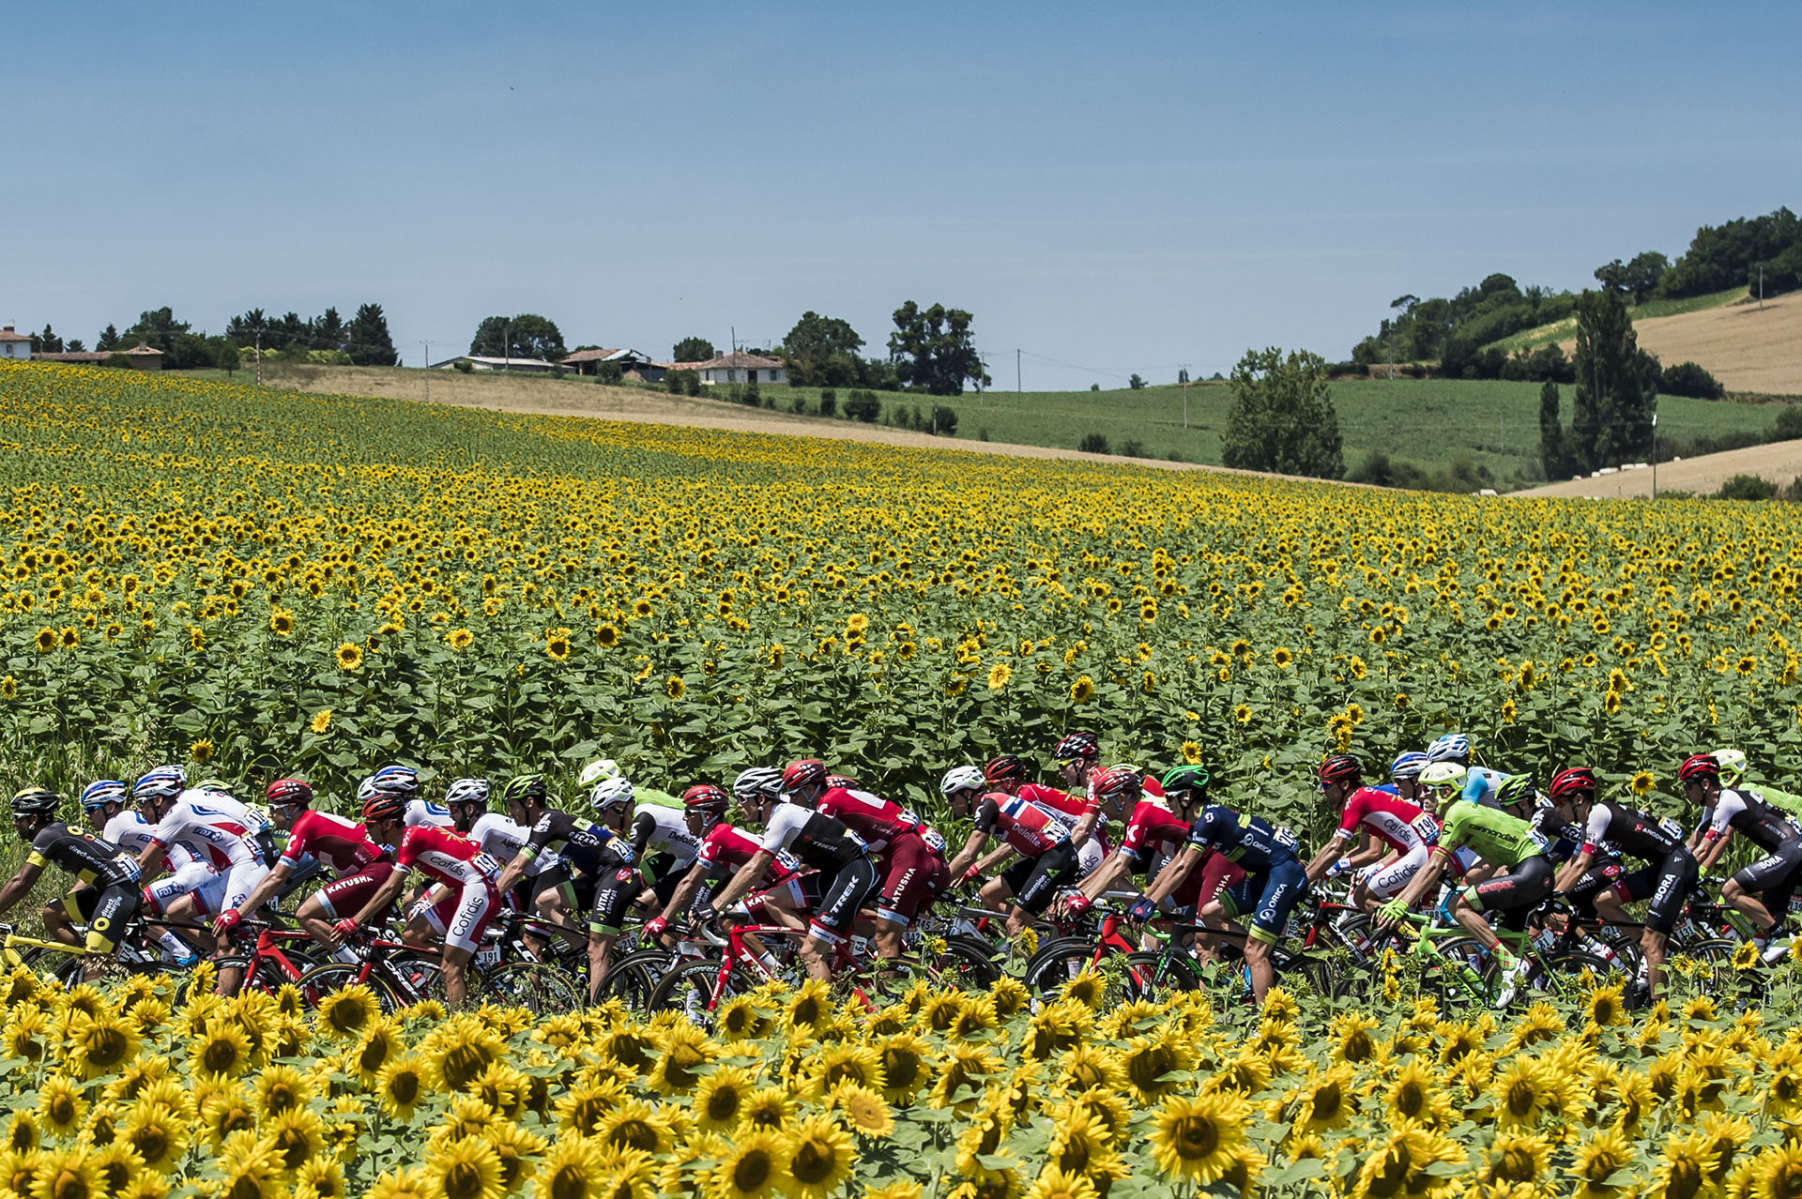 Tour de France 2016 - Stage Seven - The peloton rides past a field of sunflowers